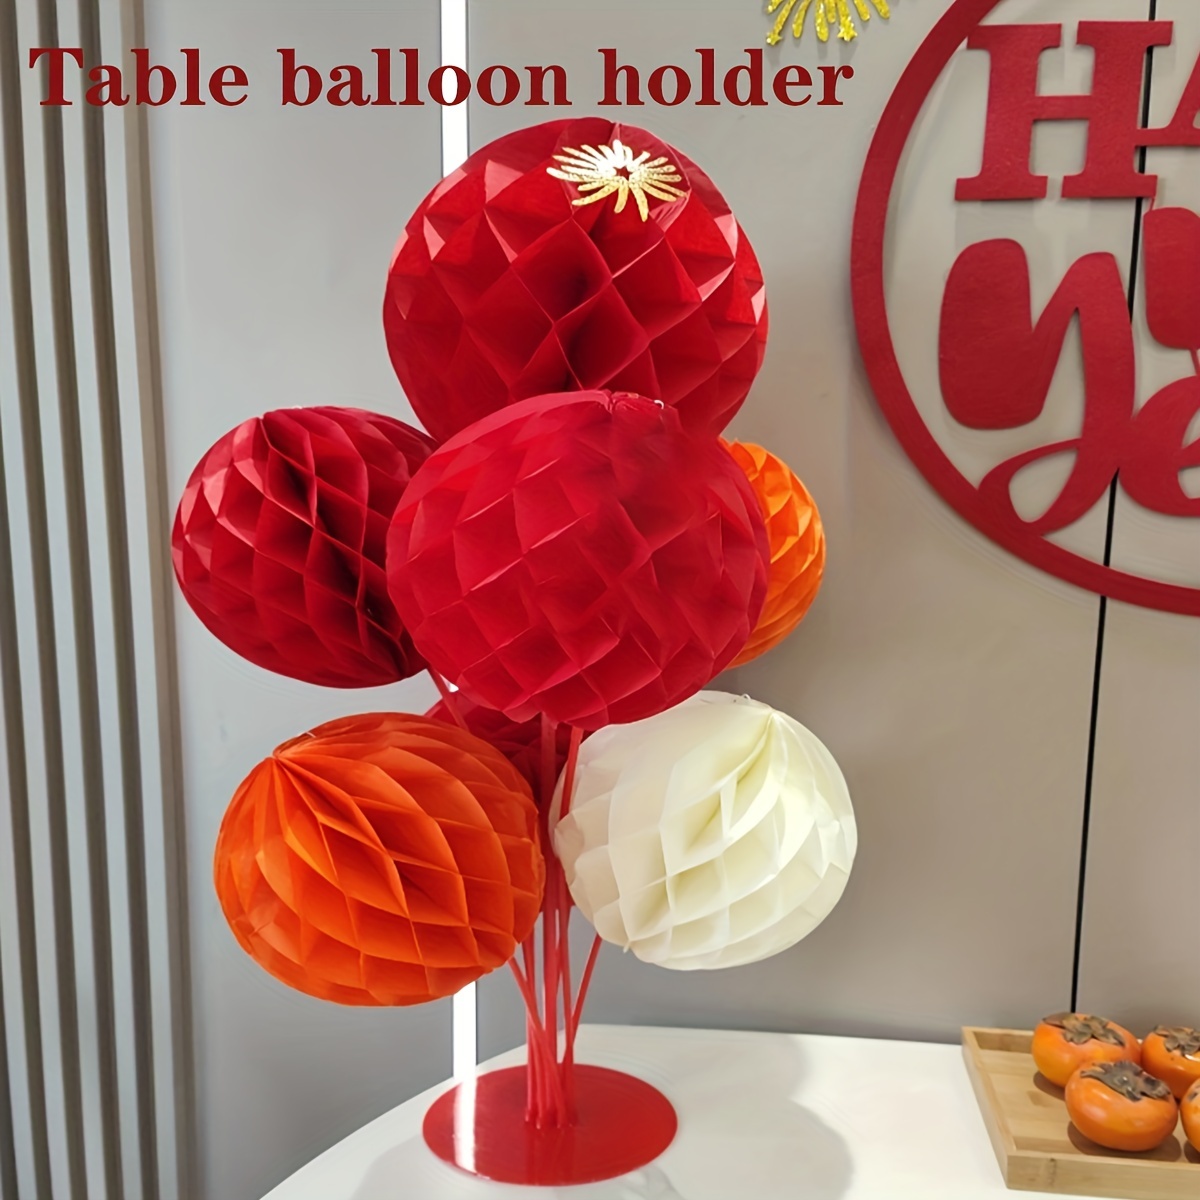 2 set di kit supporto per palloncini da tavolo,160 cm/63 pollici Supporto  per bastoncini per palloncini con supporto Supporto Palloncino,Supporto  Palloncino Balloon Tree Kit per matrimonio festa : : Casa e cucina